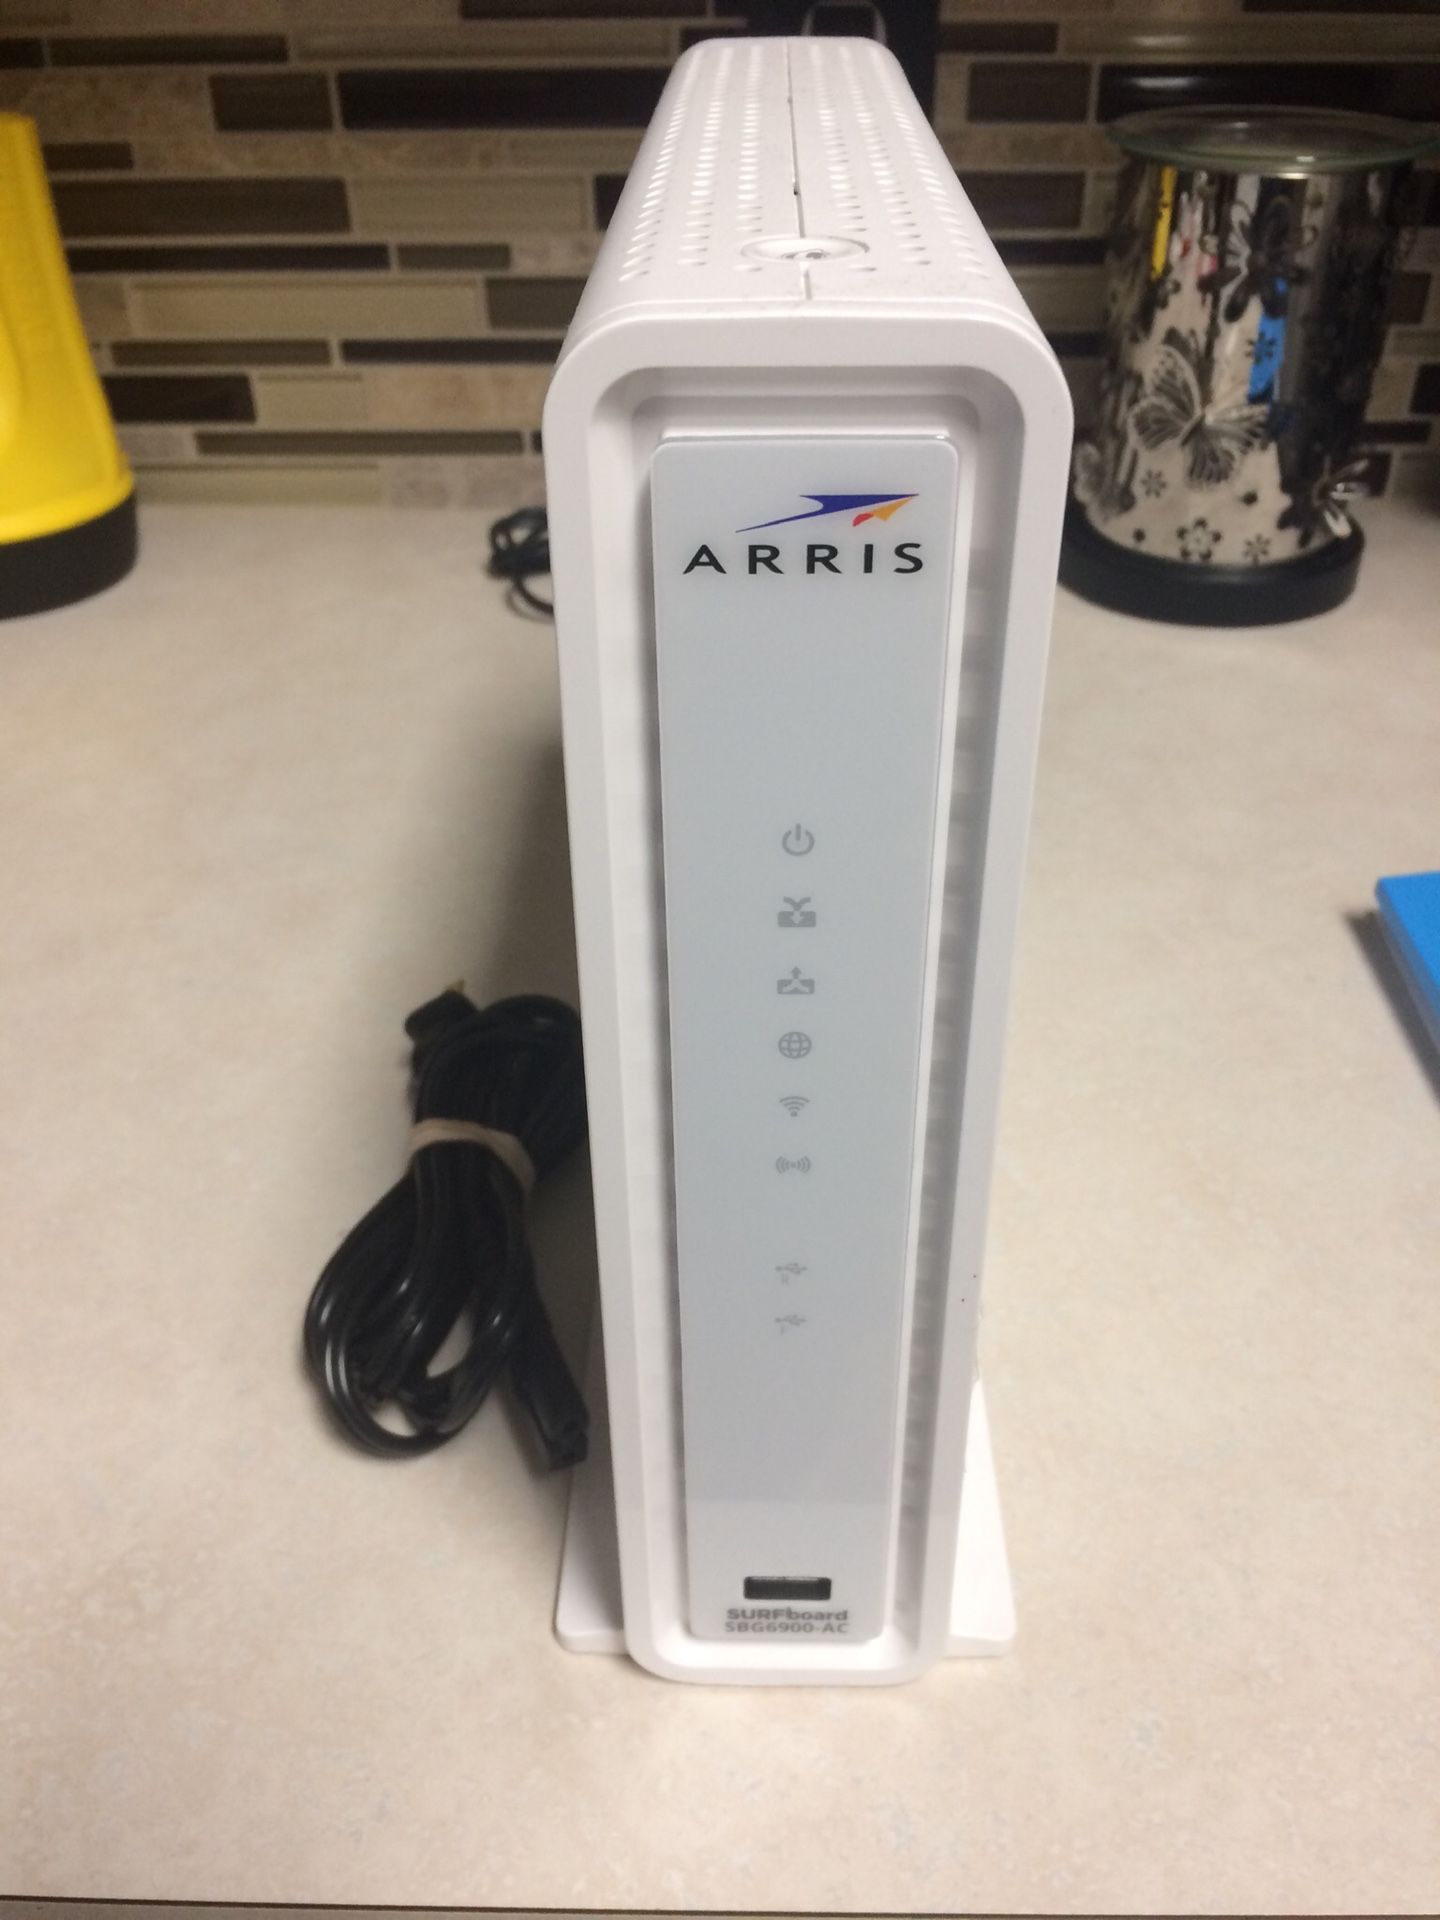 Arris Cable Modem/Router